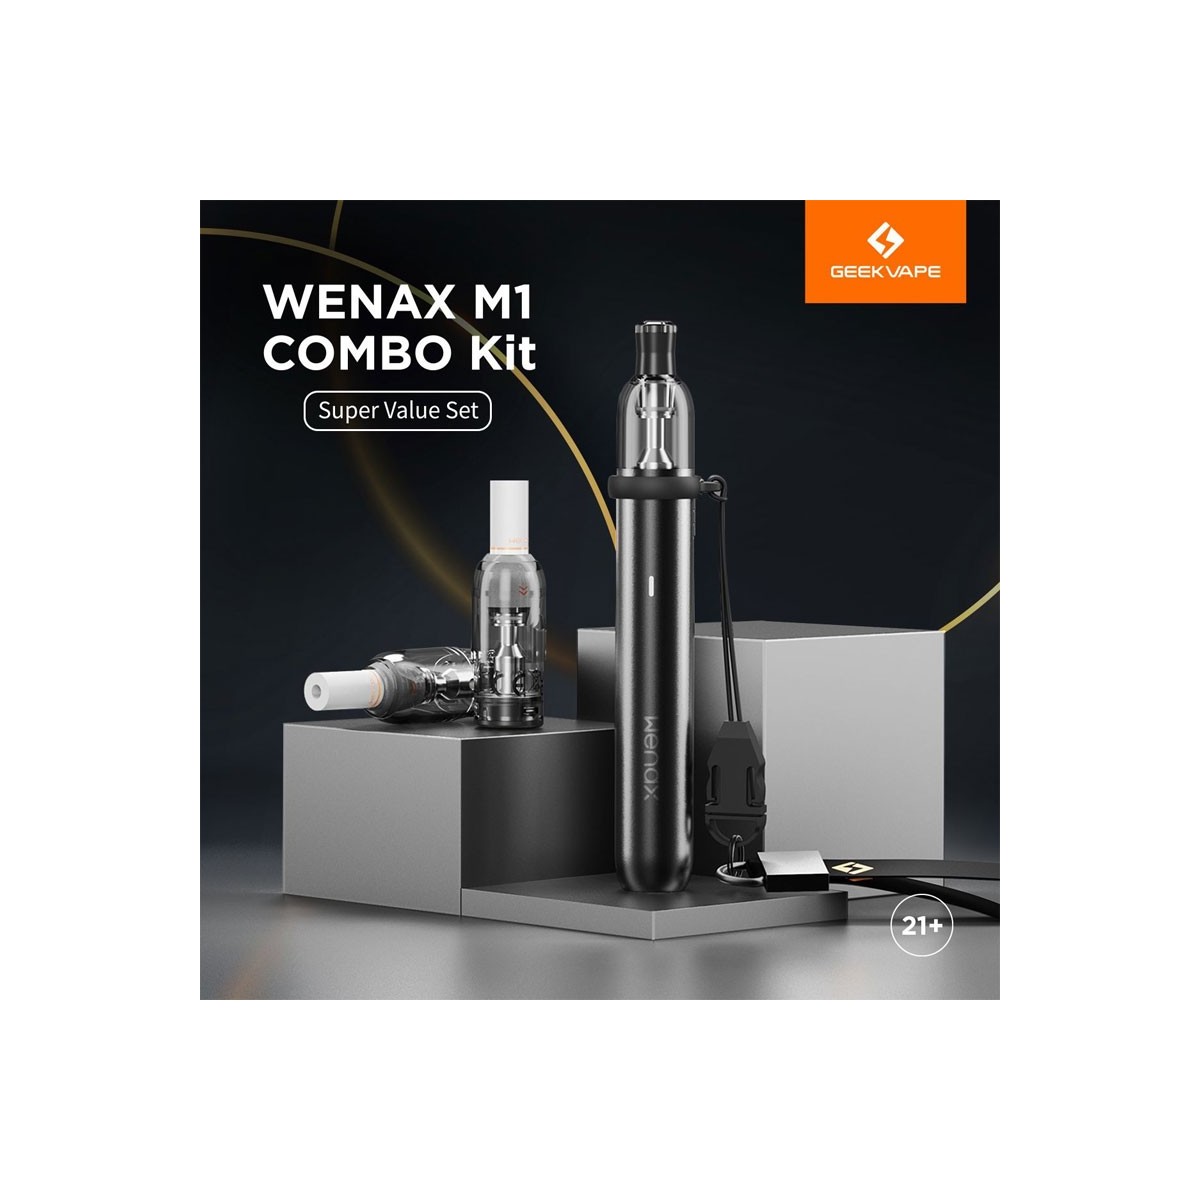 WENAX M1 Geek Vape - Sigarette Elettroniche